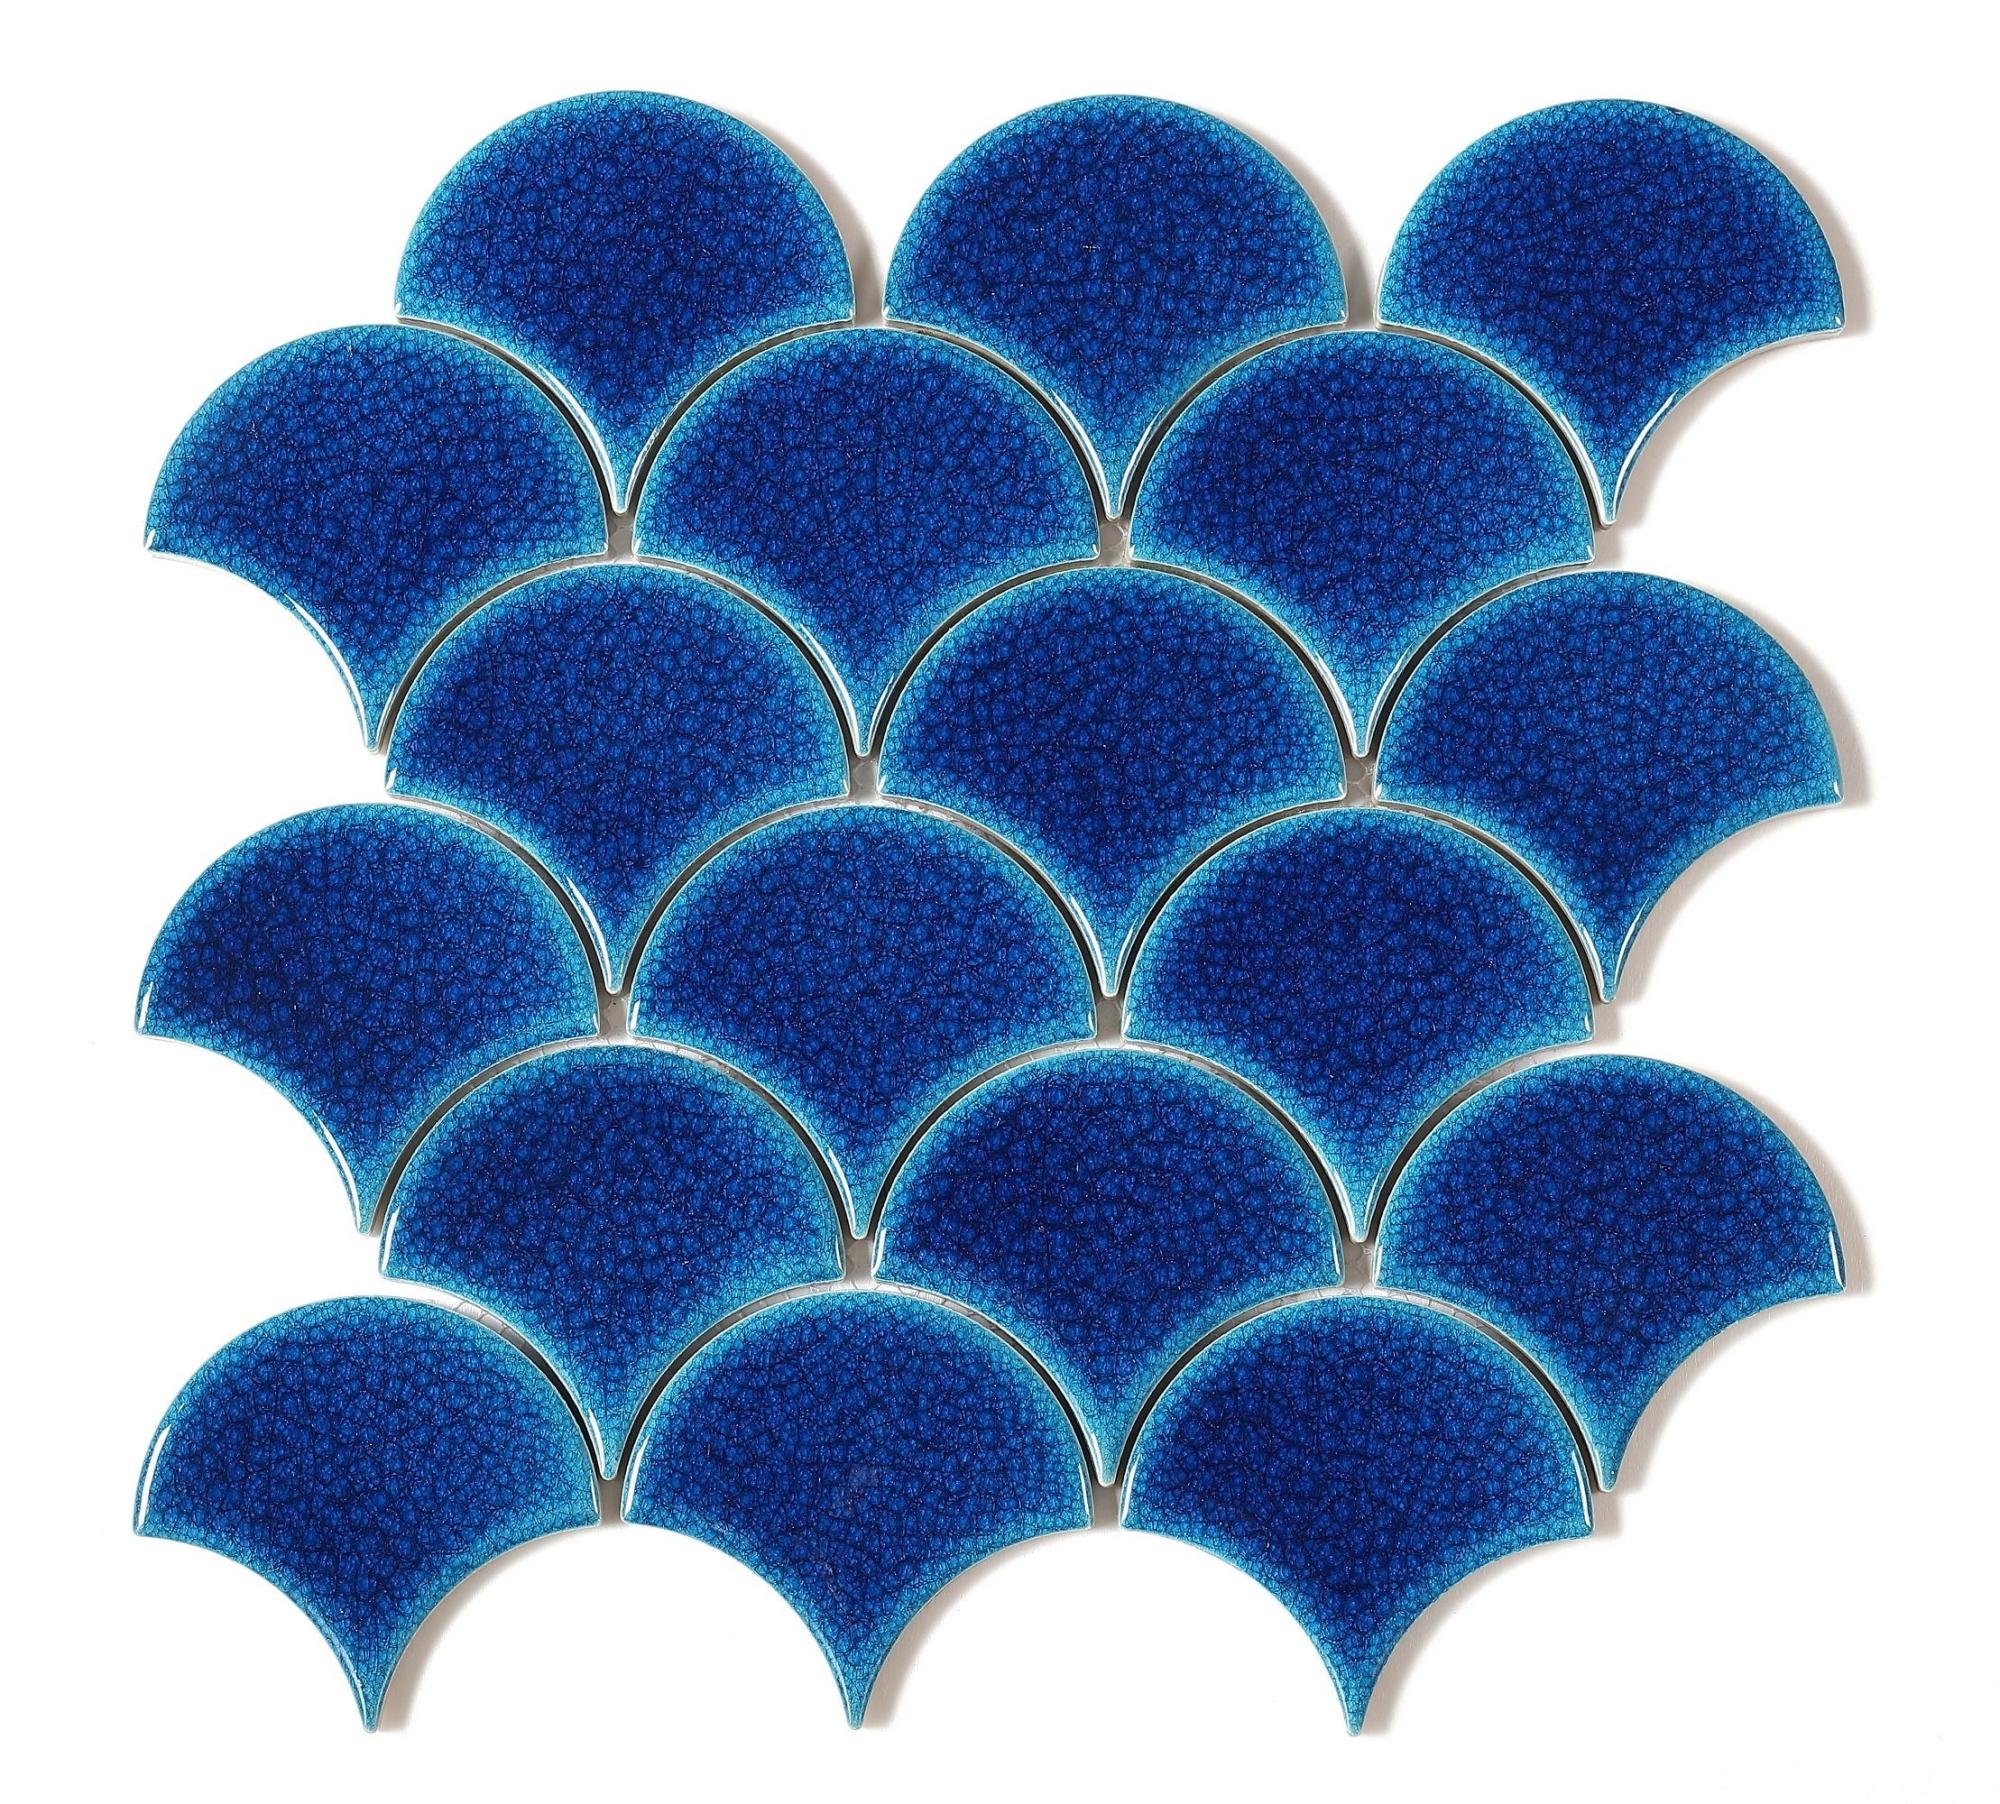 Mosaico tech 30.2x29.4 cm azul